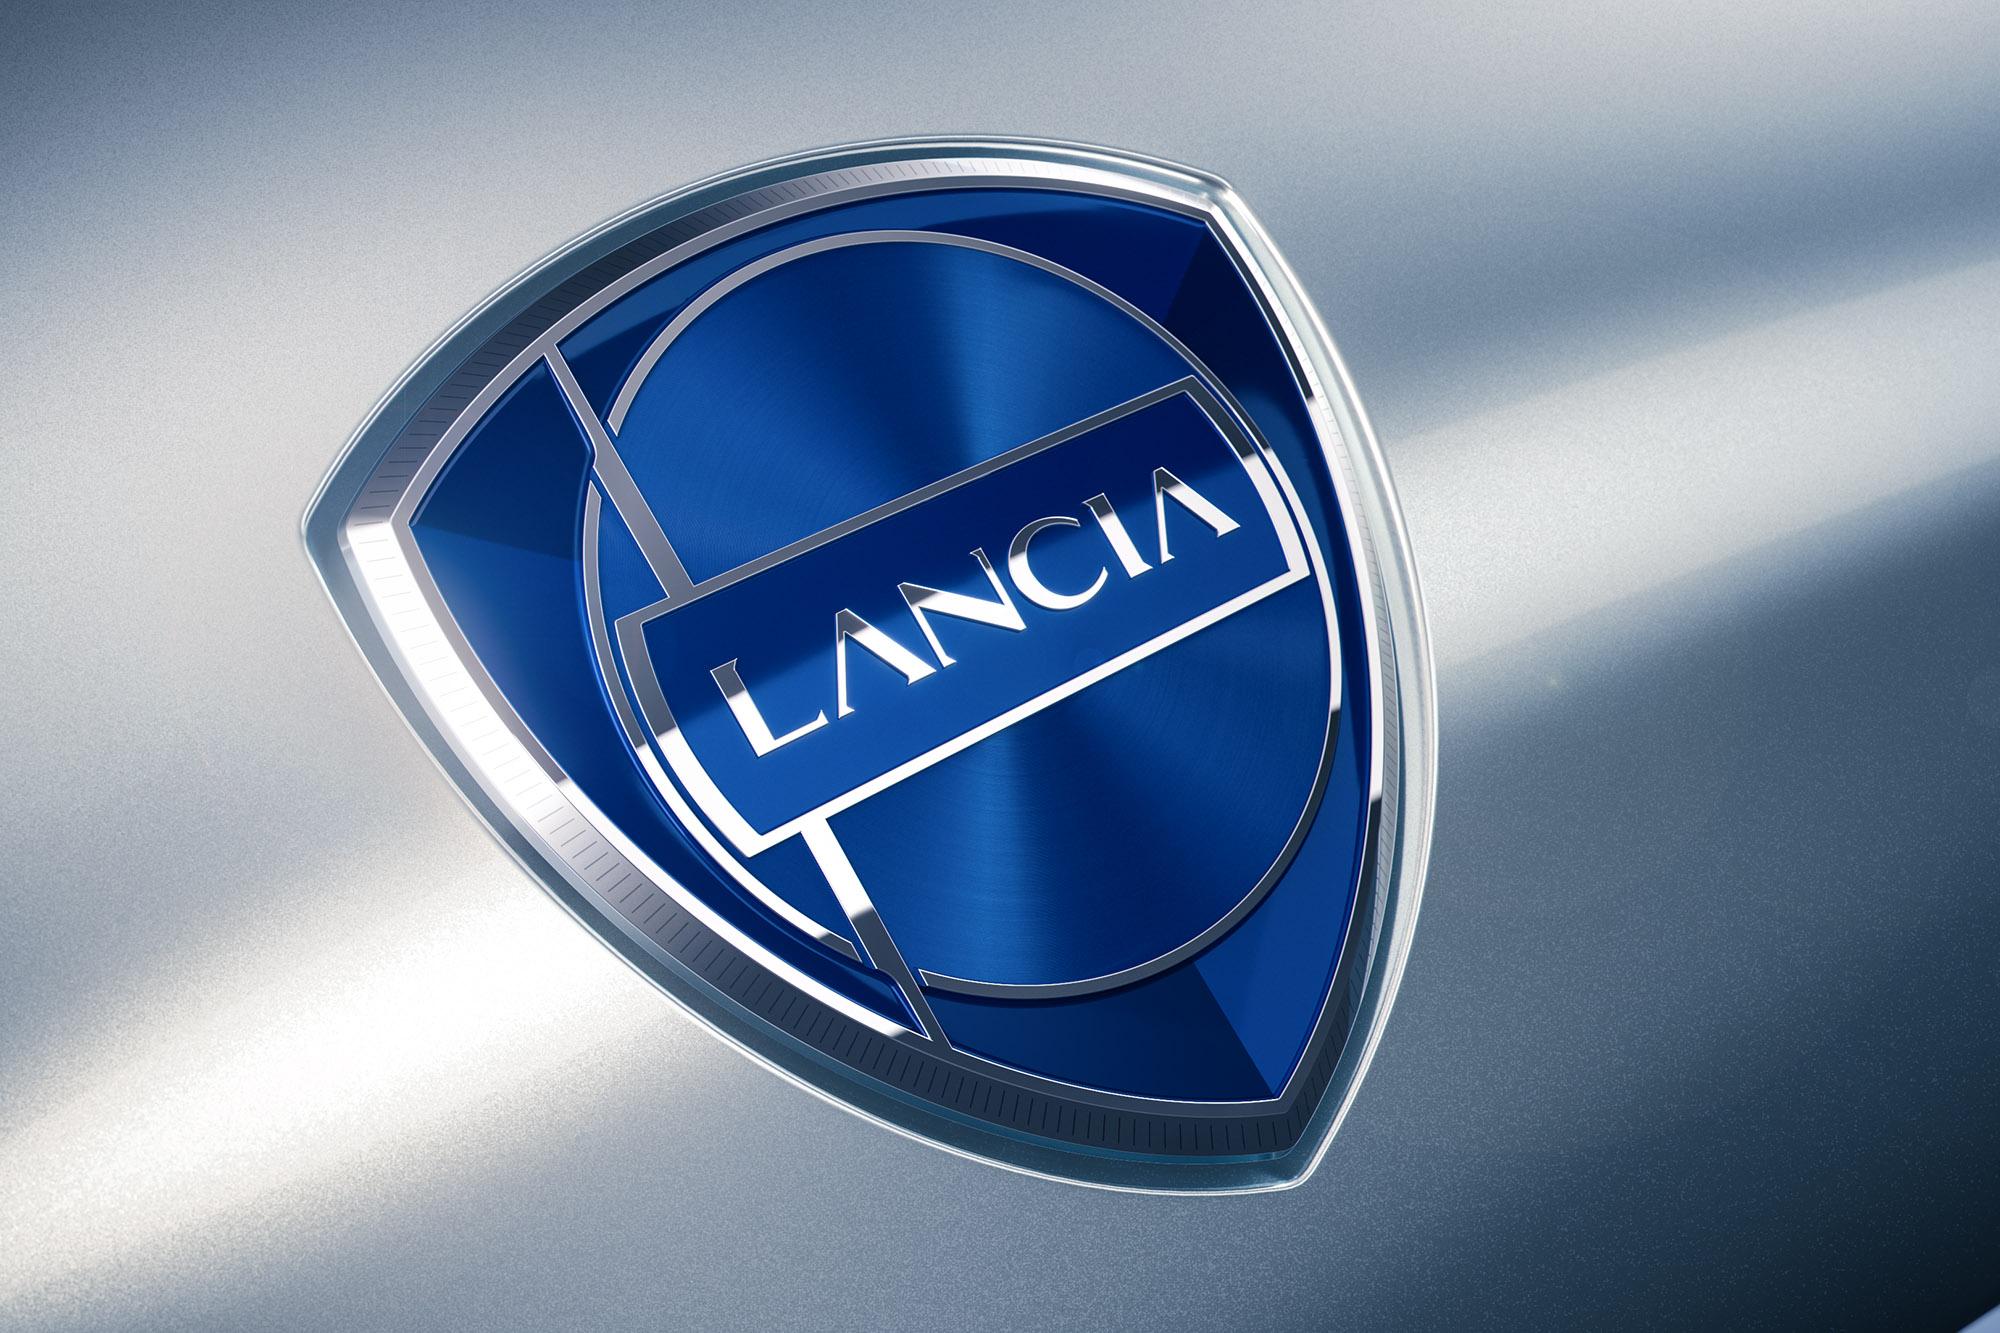 Lancia Design Day: Η πρώτη ημέρα της νέας εποχής για την Lancia